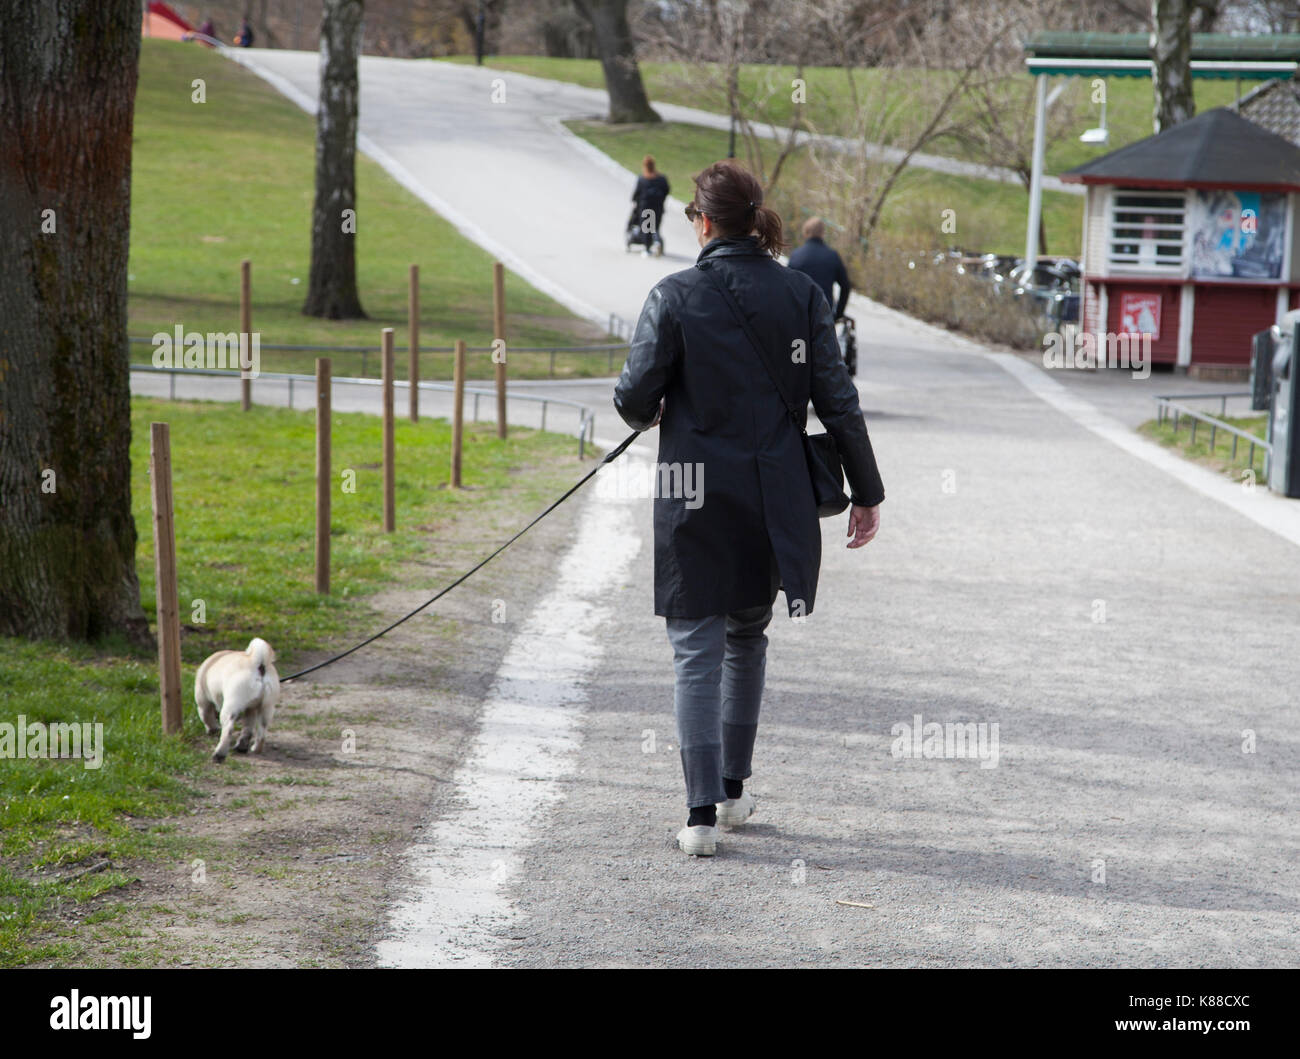 Perro camina con el perro en el año 2017 Estocolmo vasaparken Foto de stock